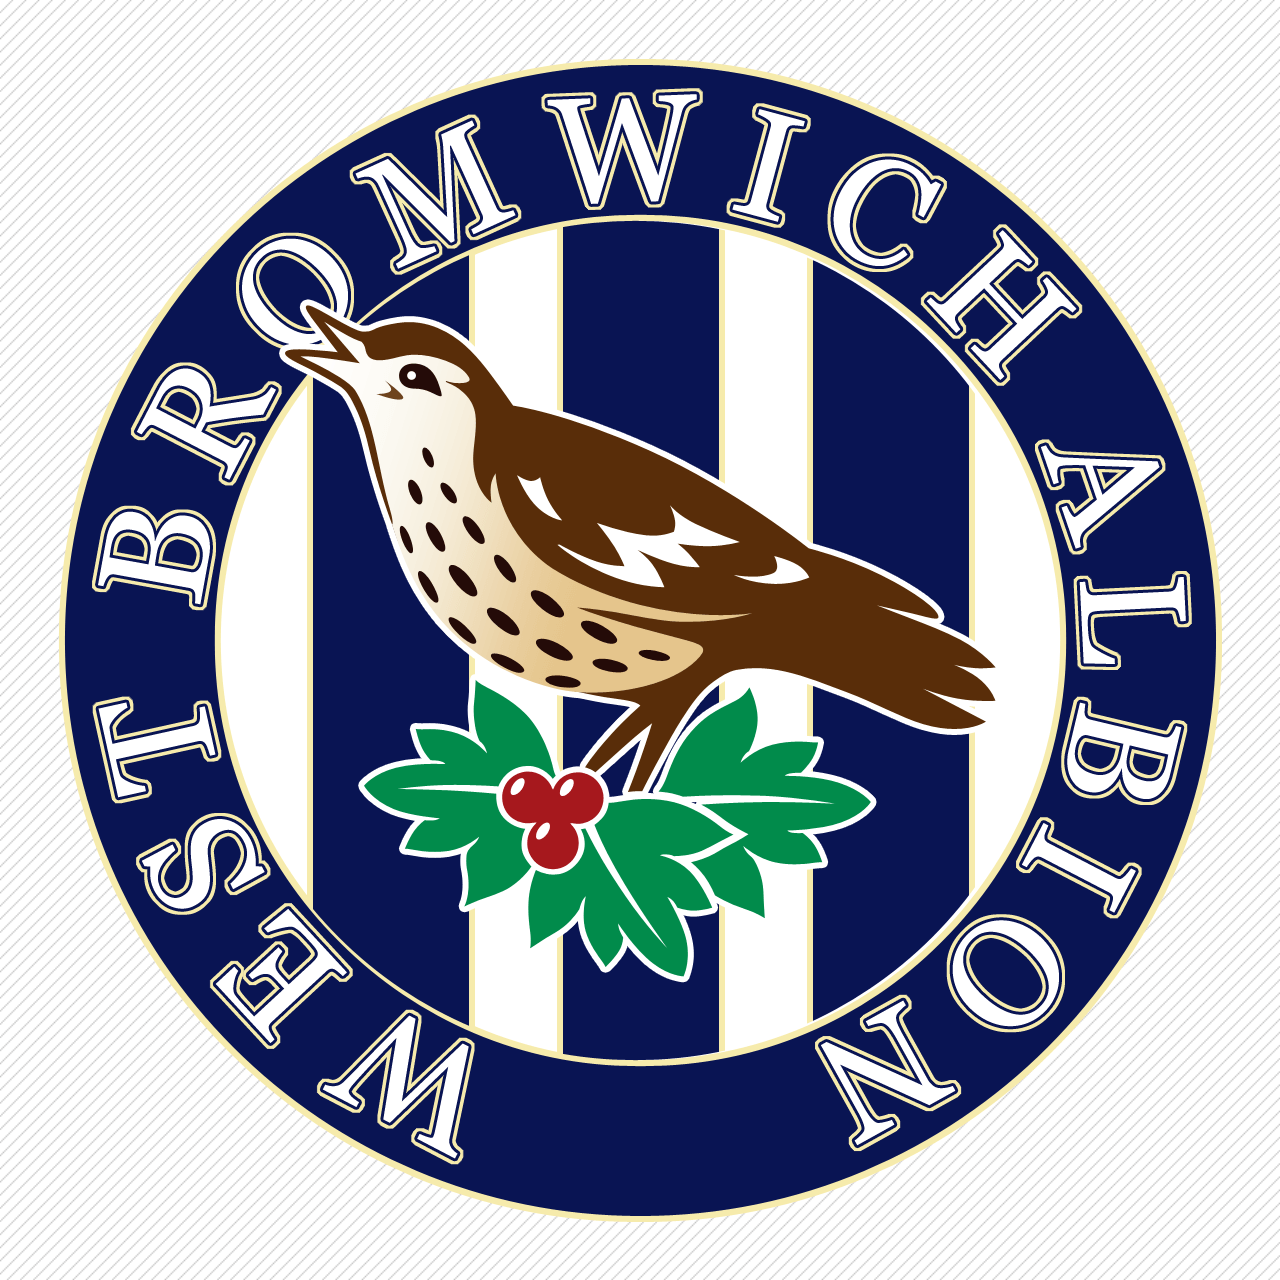 West Bromwich Albion Logo - West Bromwich Albion (old logo) | SBC -West Bromwich Albion FC ...